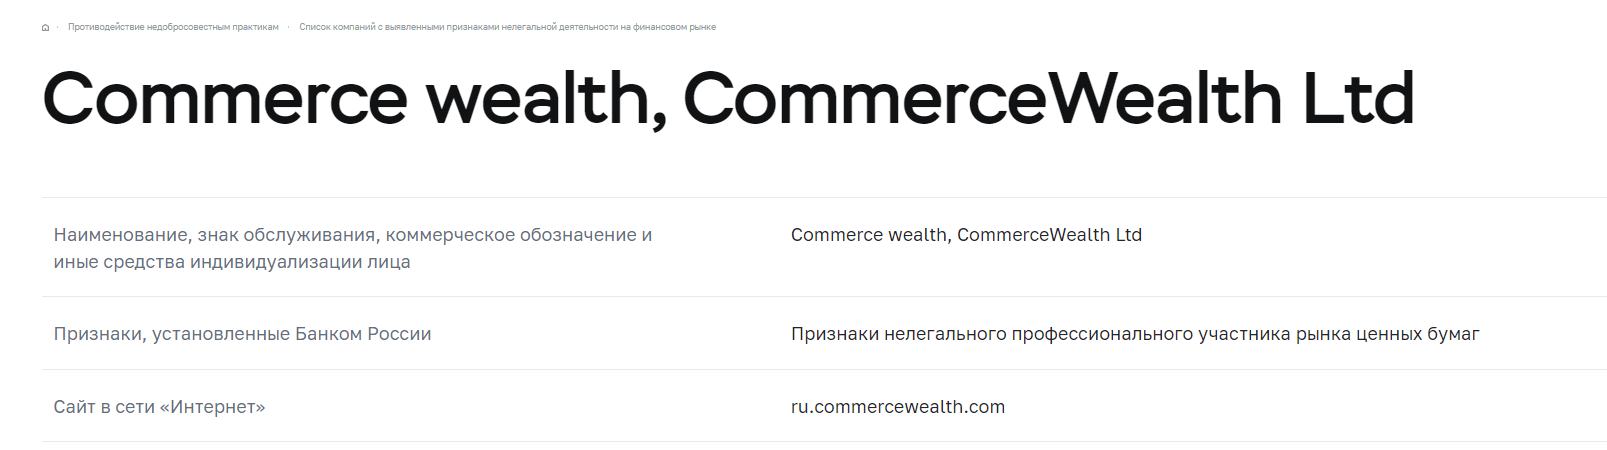 Commerce Wealth - возможность заработать или лохотрон?, Фото № 6 - 1-consult.net